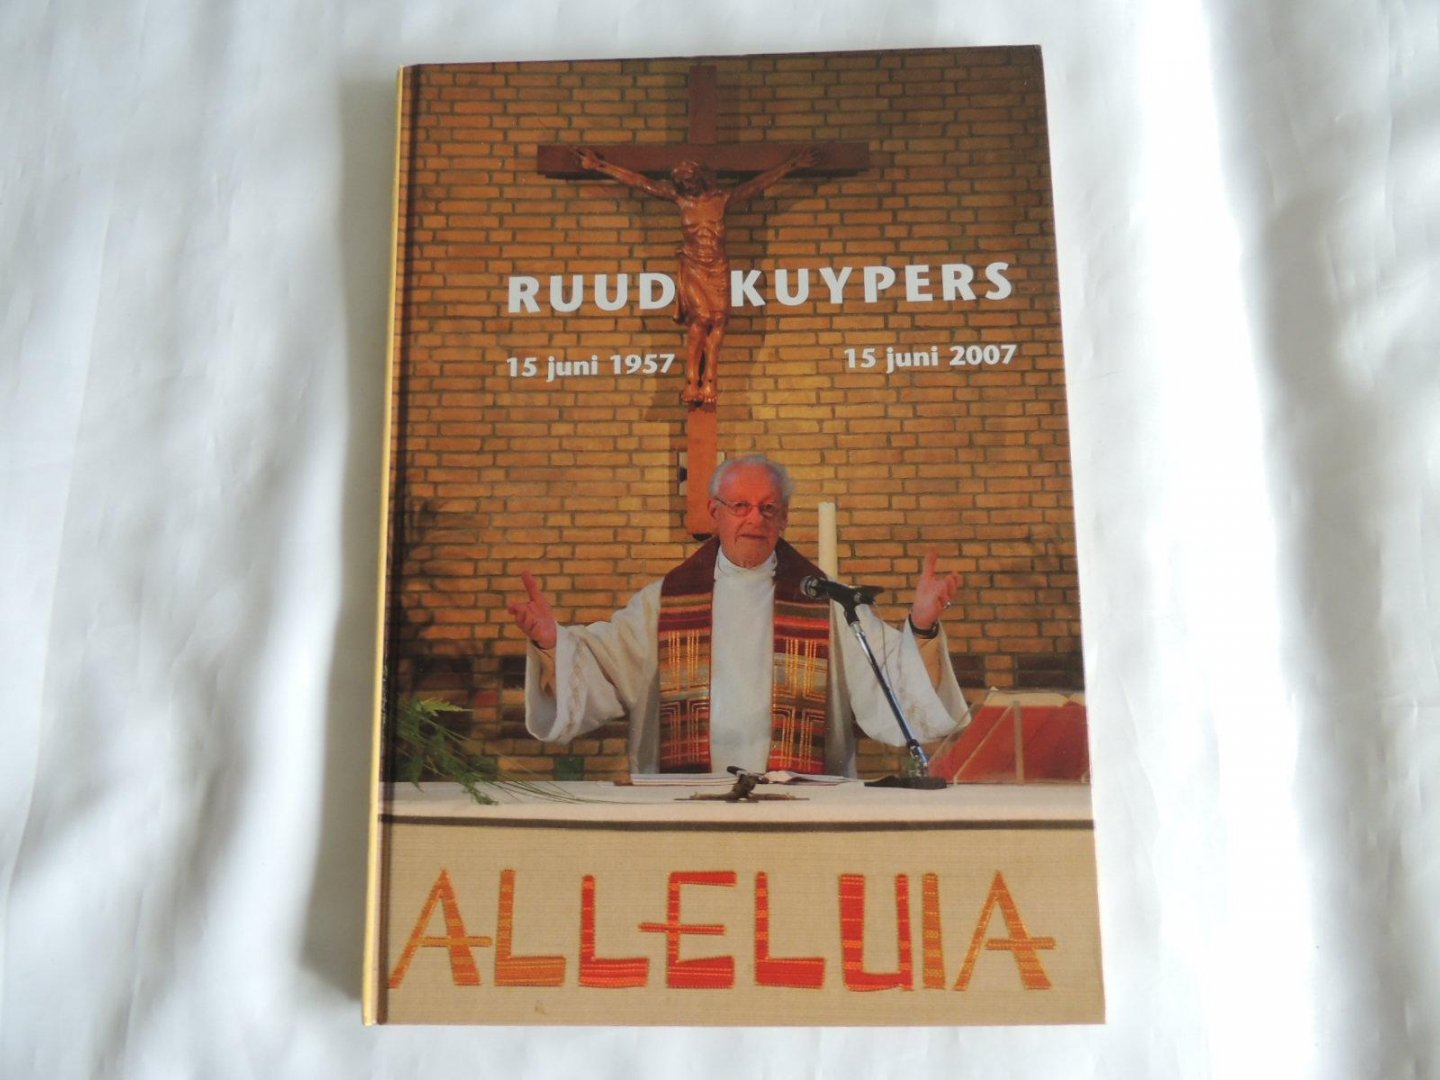 Wit, Alphons de - ALLELUIA - Ruud Kuypers - 15 juni 1957 - 15 juni 2007